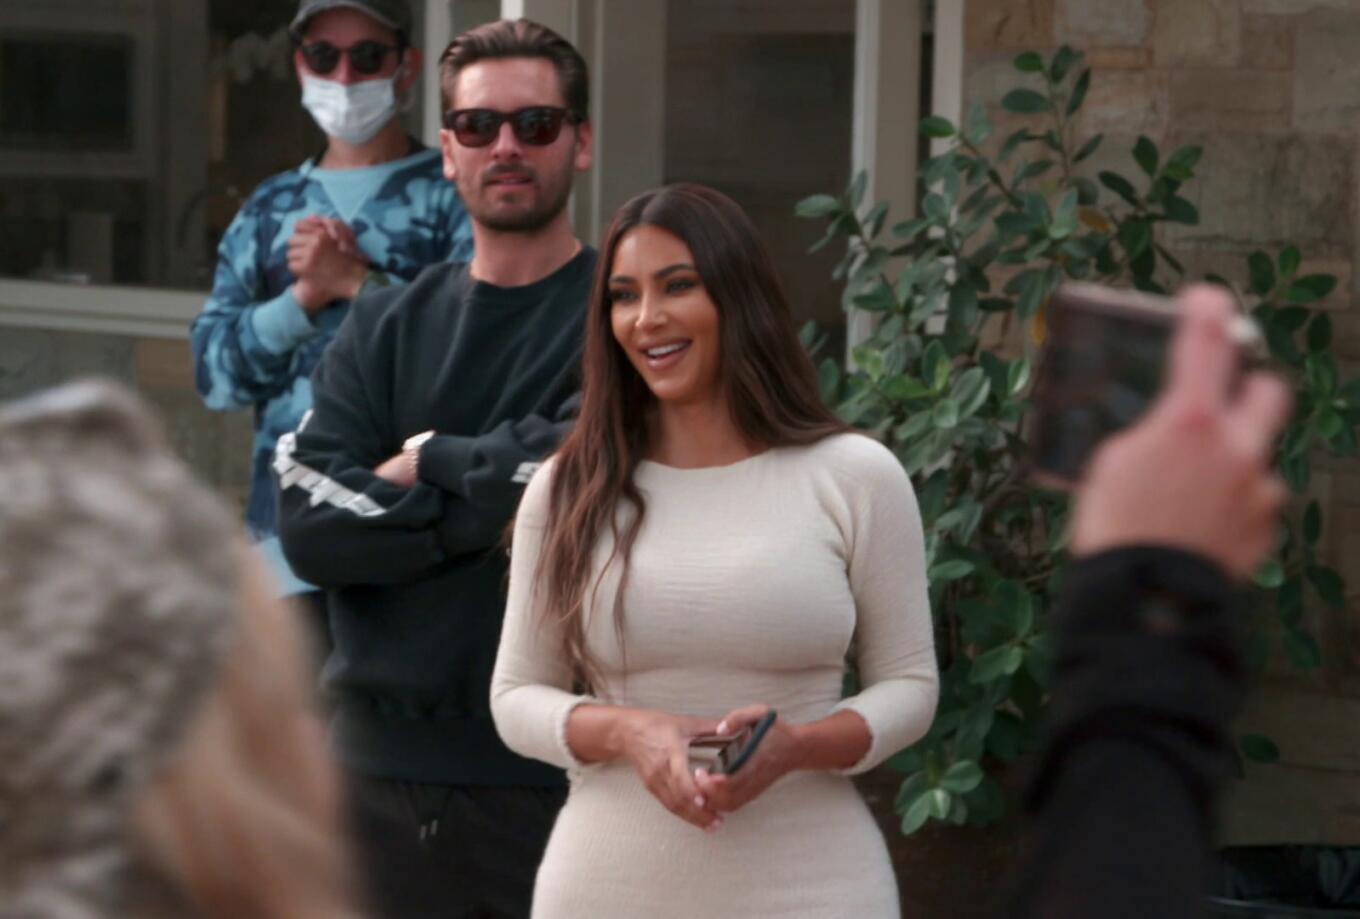 Kim Kardashian - Keeping Up With The Kardashians | Season 20 Episode 7 | Kourtney Kardashian style